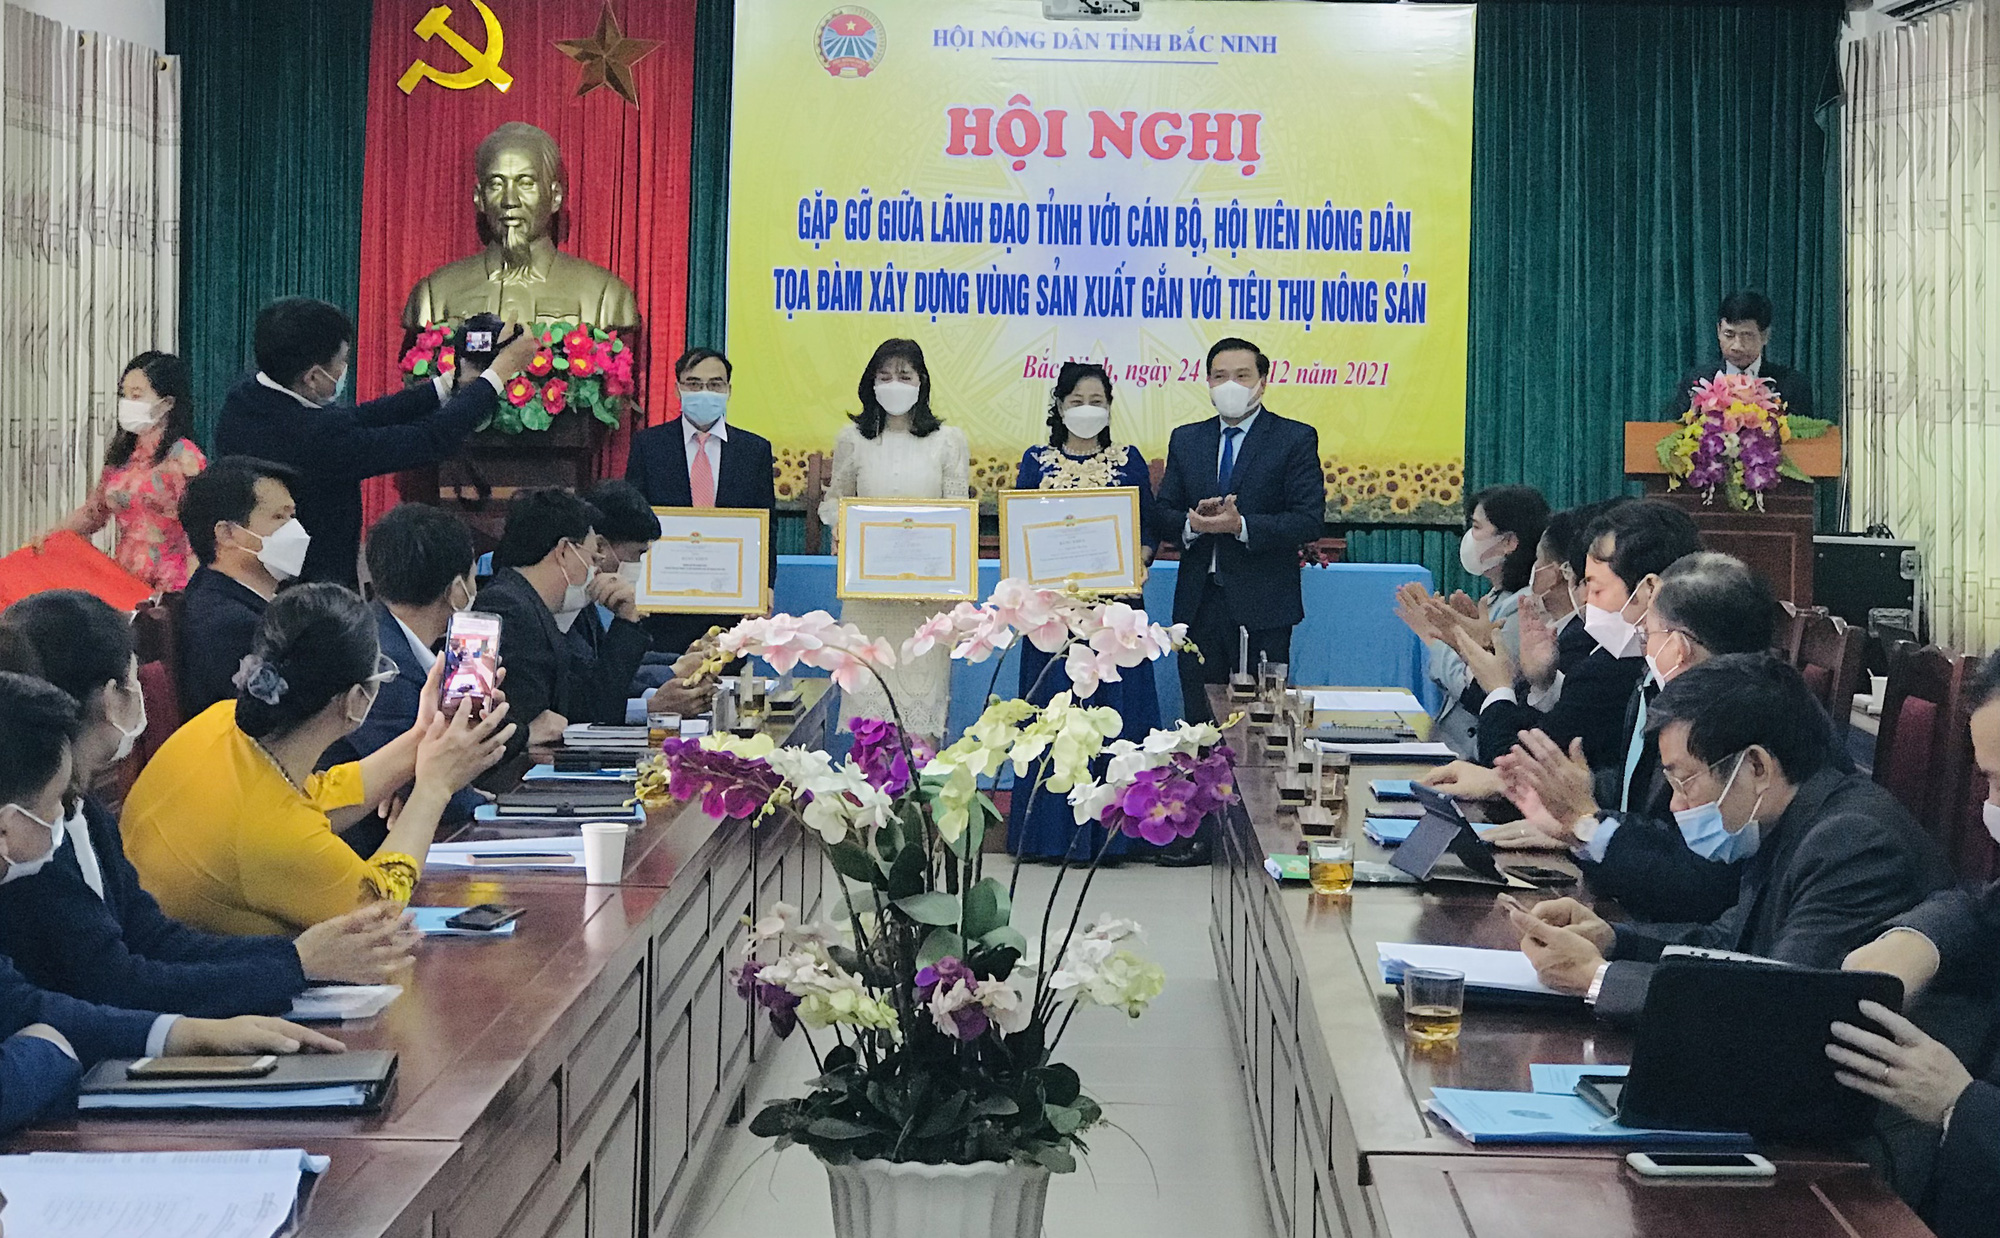 Bắc Ninh: Lãnh đạo tỉnh đối thoại, gỡ khó trong sản xuất nông nghiệp cho nông dân - Ảnh 5.